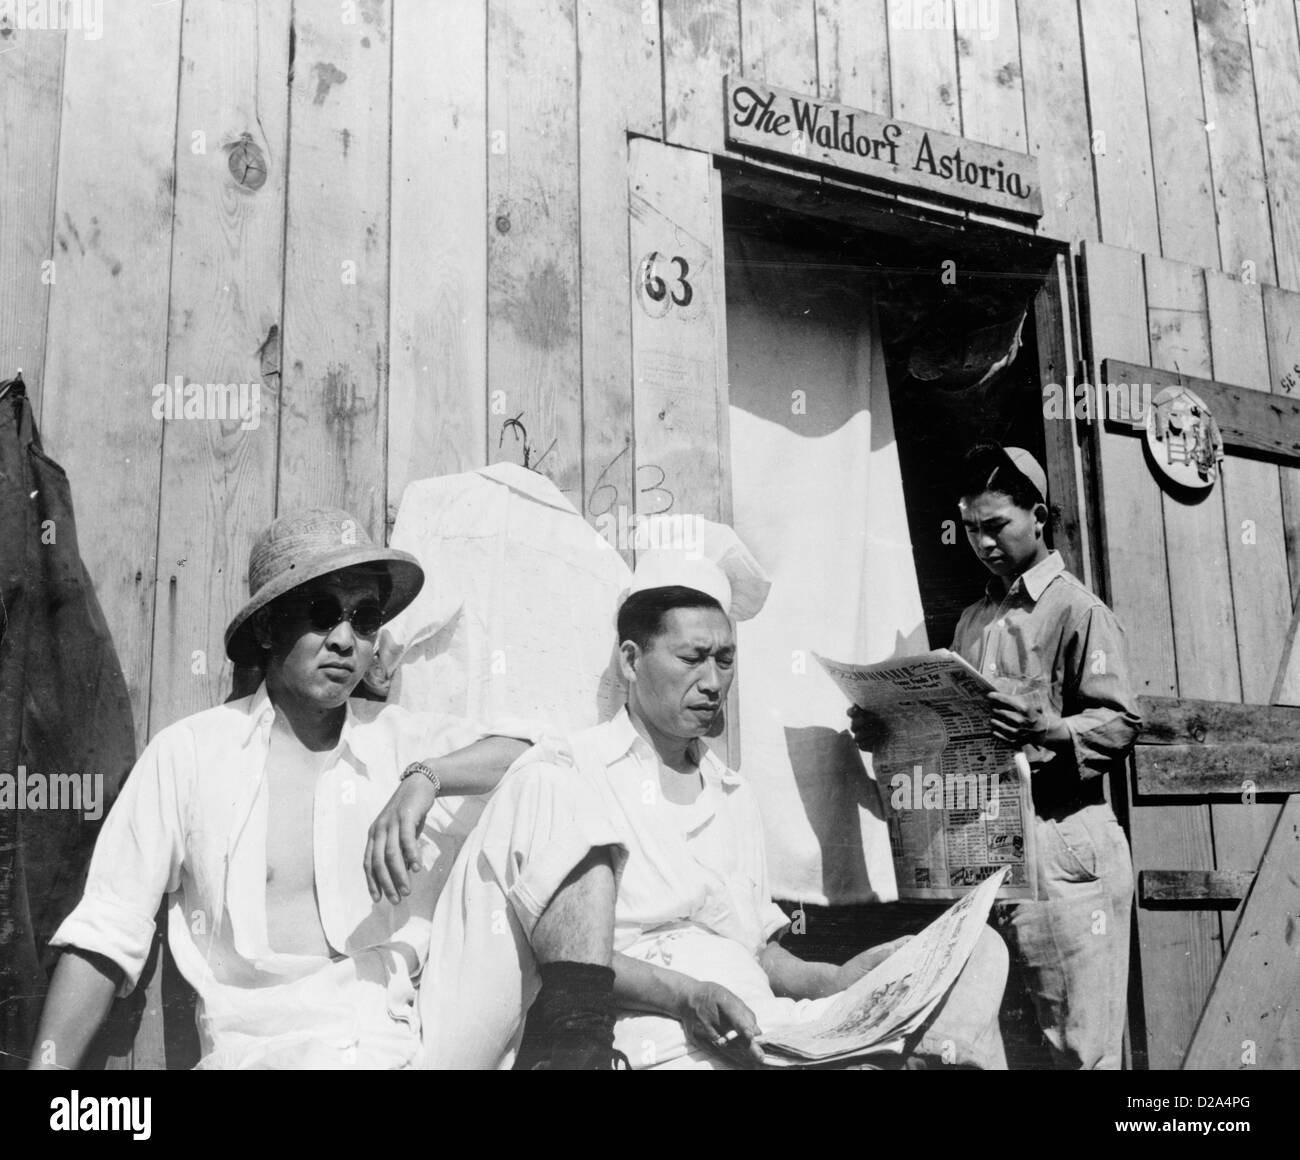 La photographie montre trois hommes assis japonais internés mots construction en bois 'Le Waldorf Astoria' écrit plus de Porte 1942 Banque D'Images